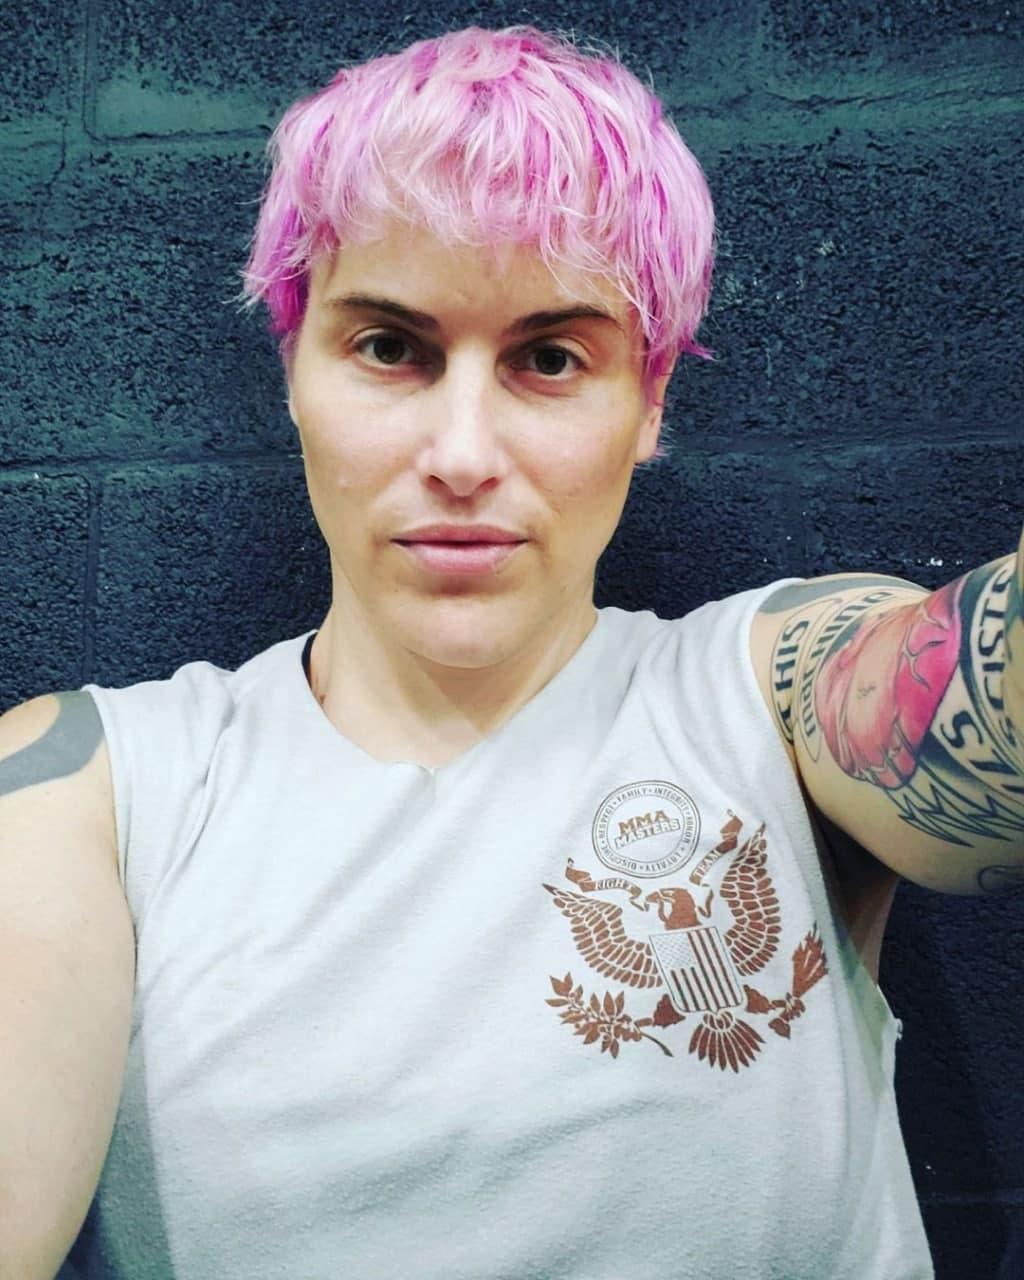 Трансгендерная женщина Алана Маклафлин провела первый свой поединок по правилам смешанных единоборств (ММА)